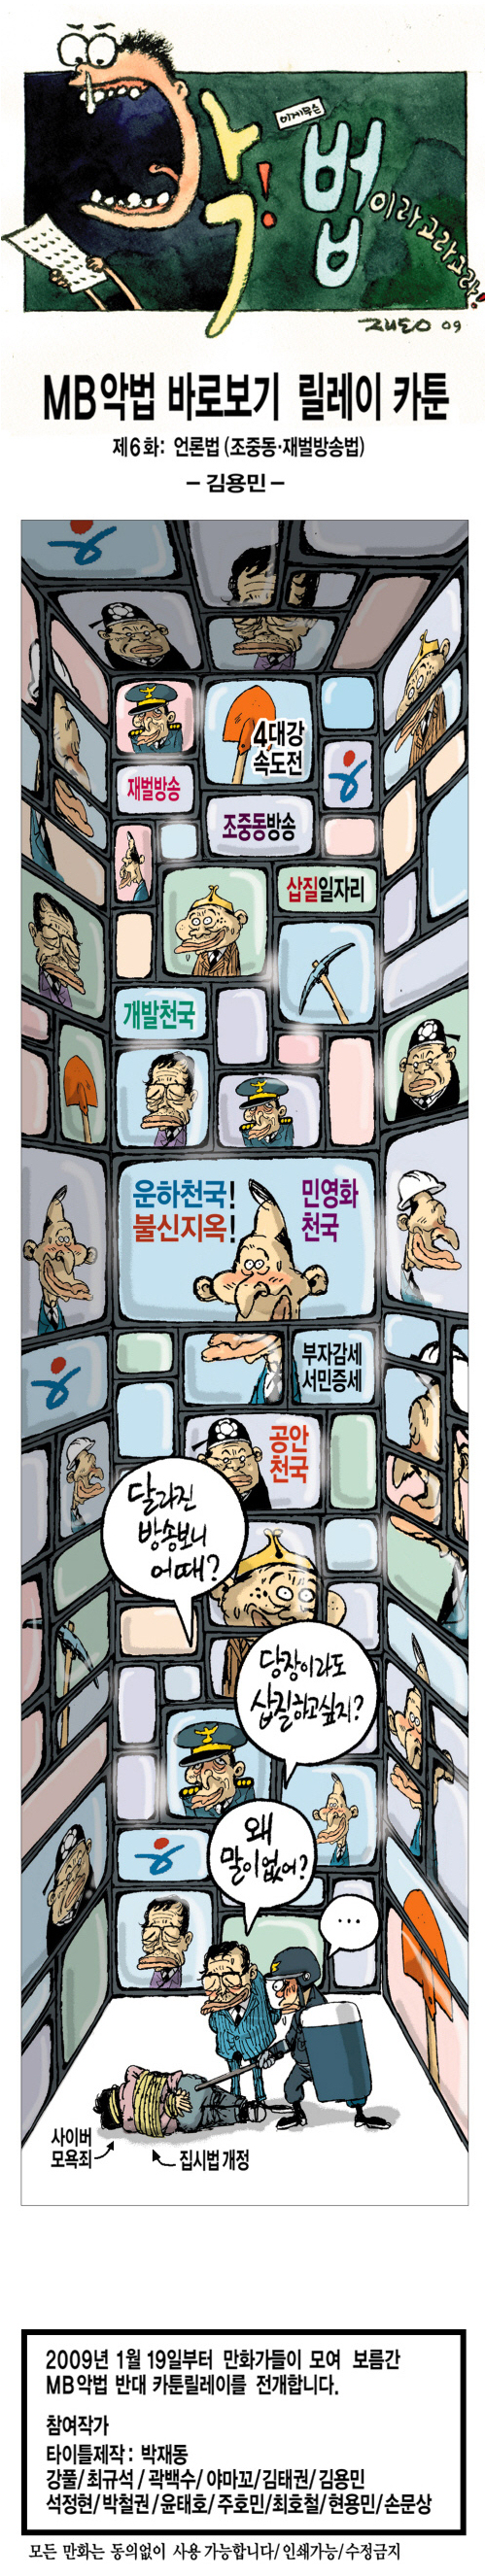 MB악법 저지 - 김용민, 언론법